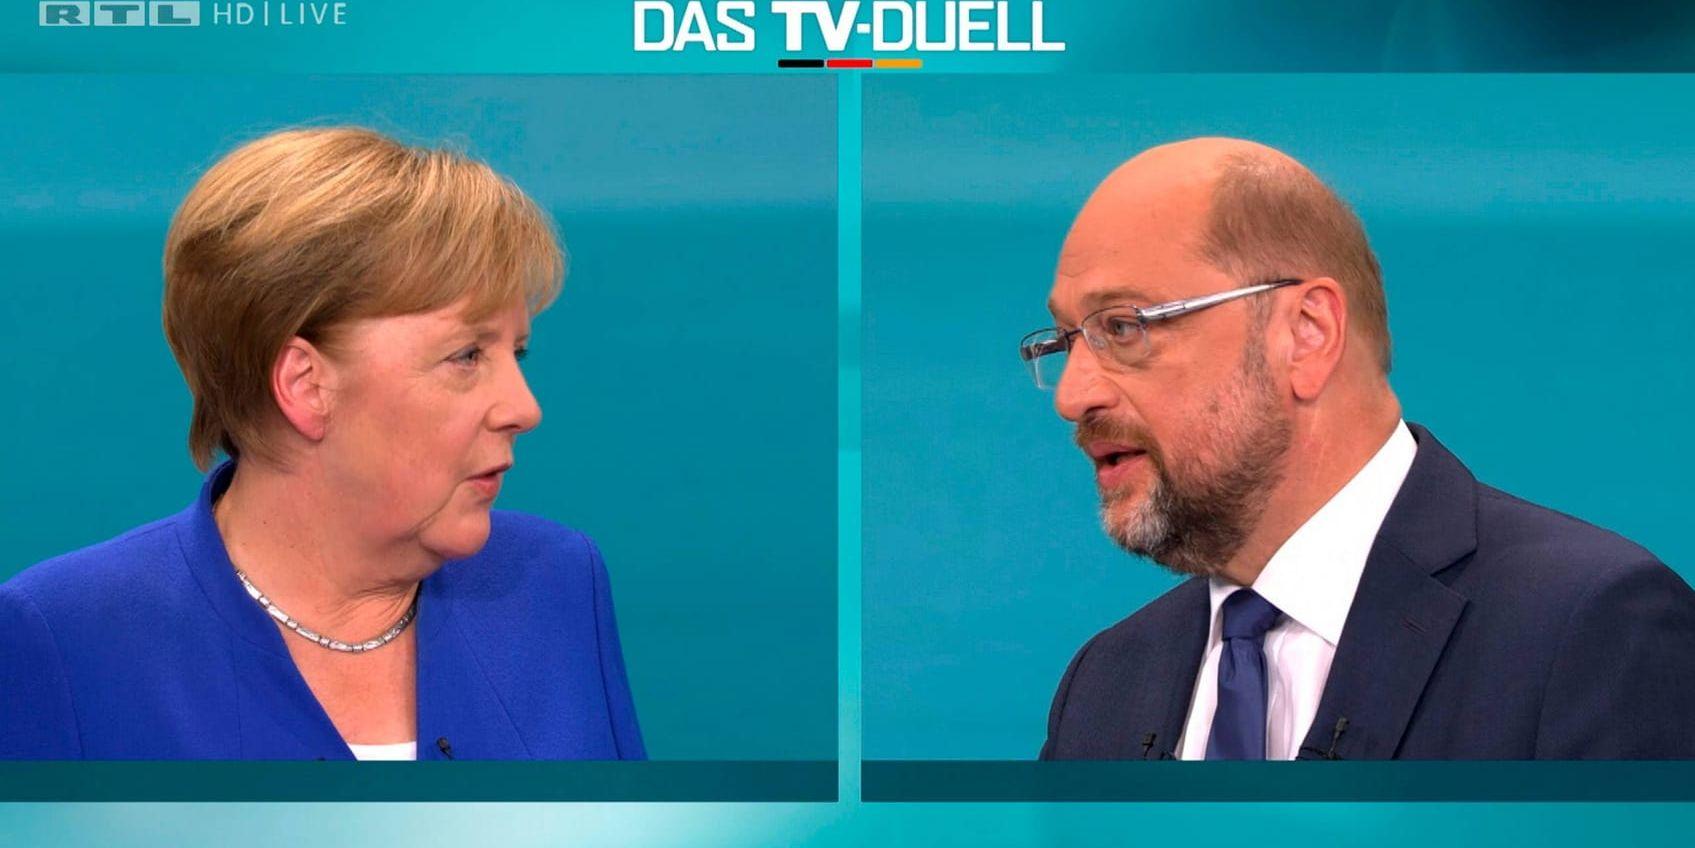 Tysklands förbundskansler mötte utmanaren Martin Schulz i en enda tv-sänd debatt inför valet den 24 september.